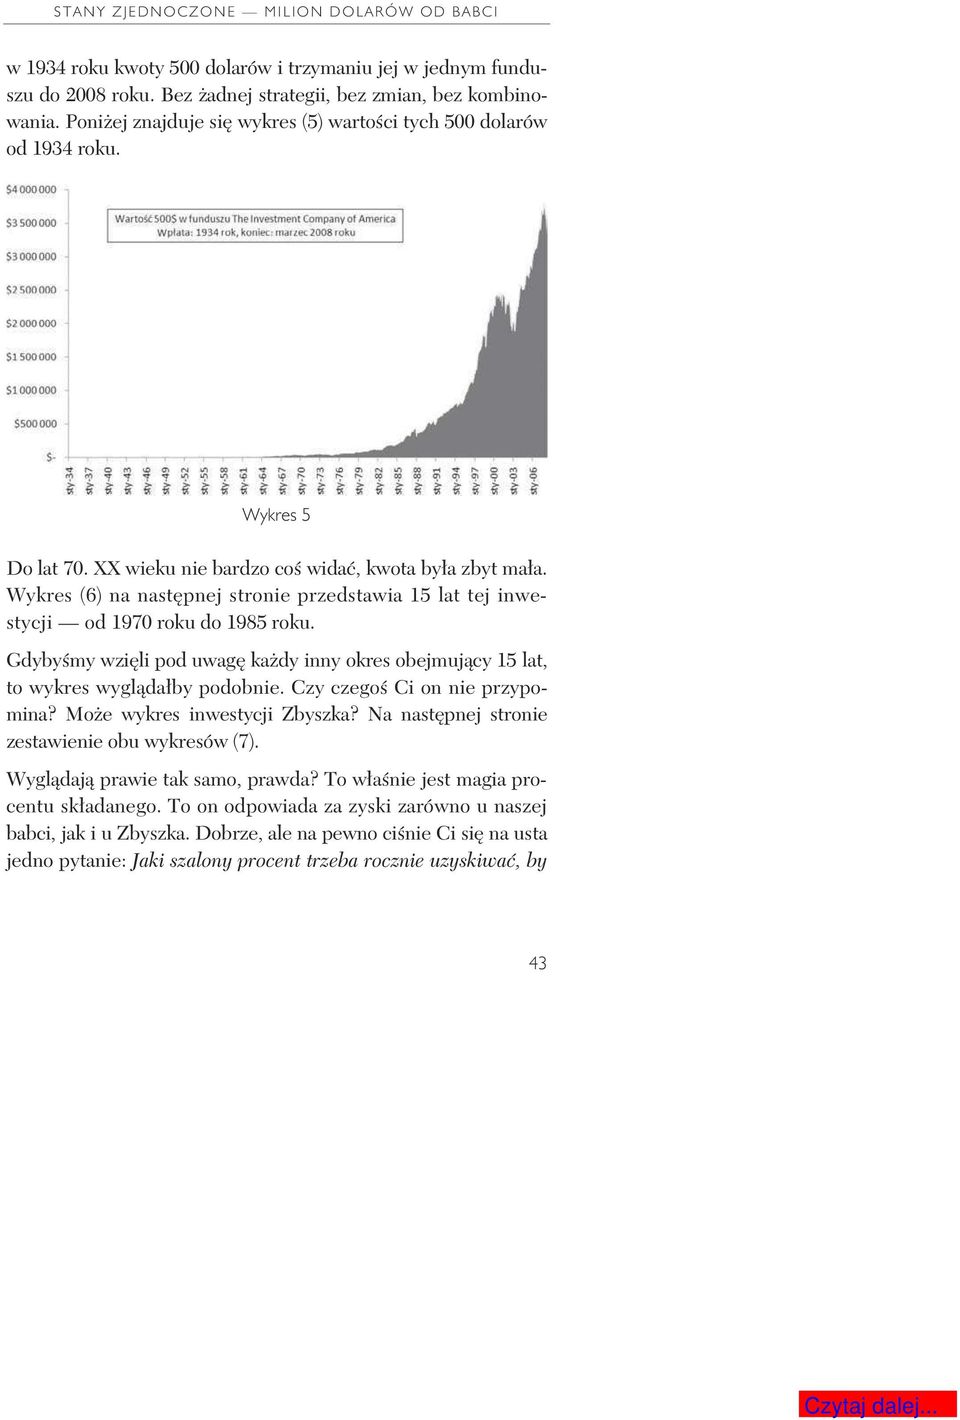 Wykres (6) na nast pnej stronie przedstawia 15 lat tej inwestycji od 1970 roku do 1985 roku. Gdyby my wzi li pod uwag ka dy inny okres obejmuj cy 15 lat, to wykres wygl da by podobnie.